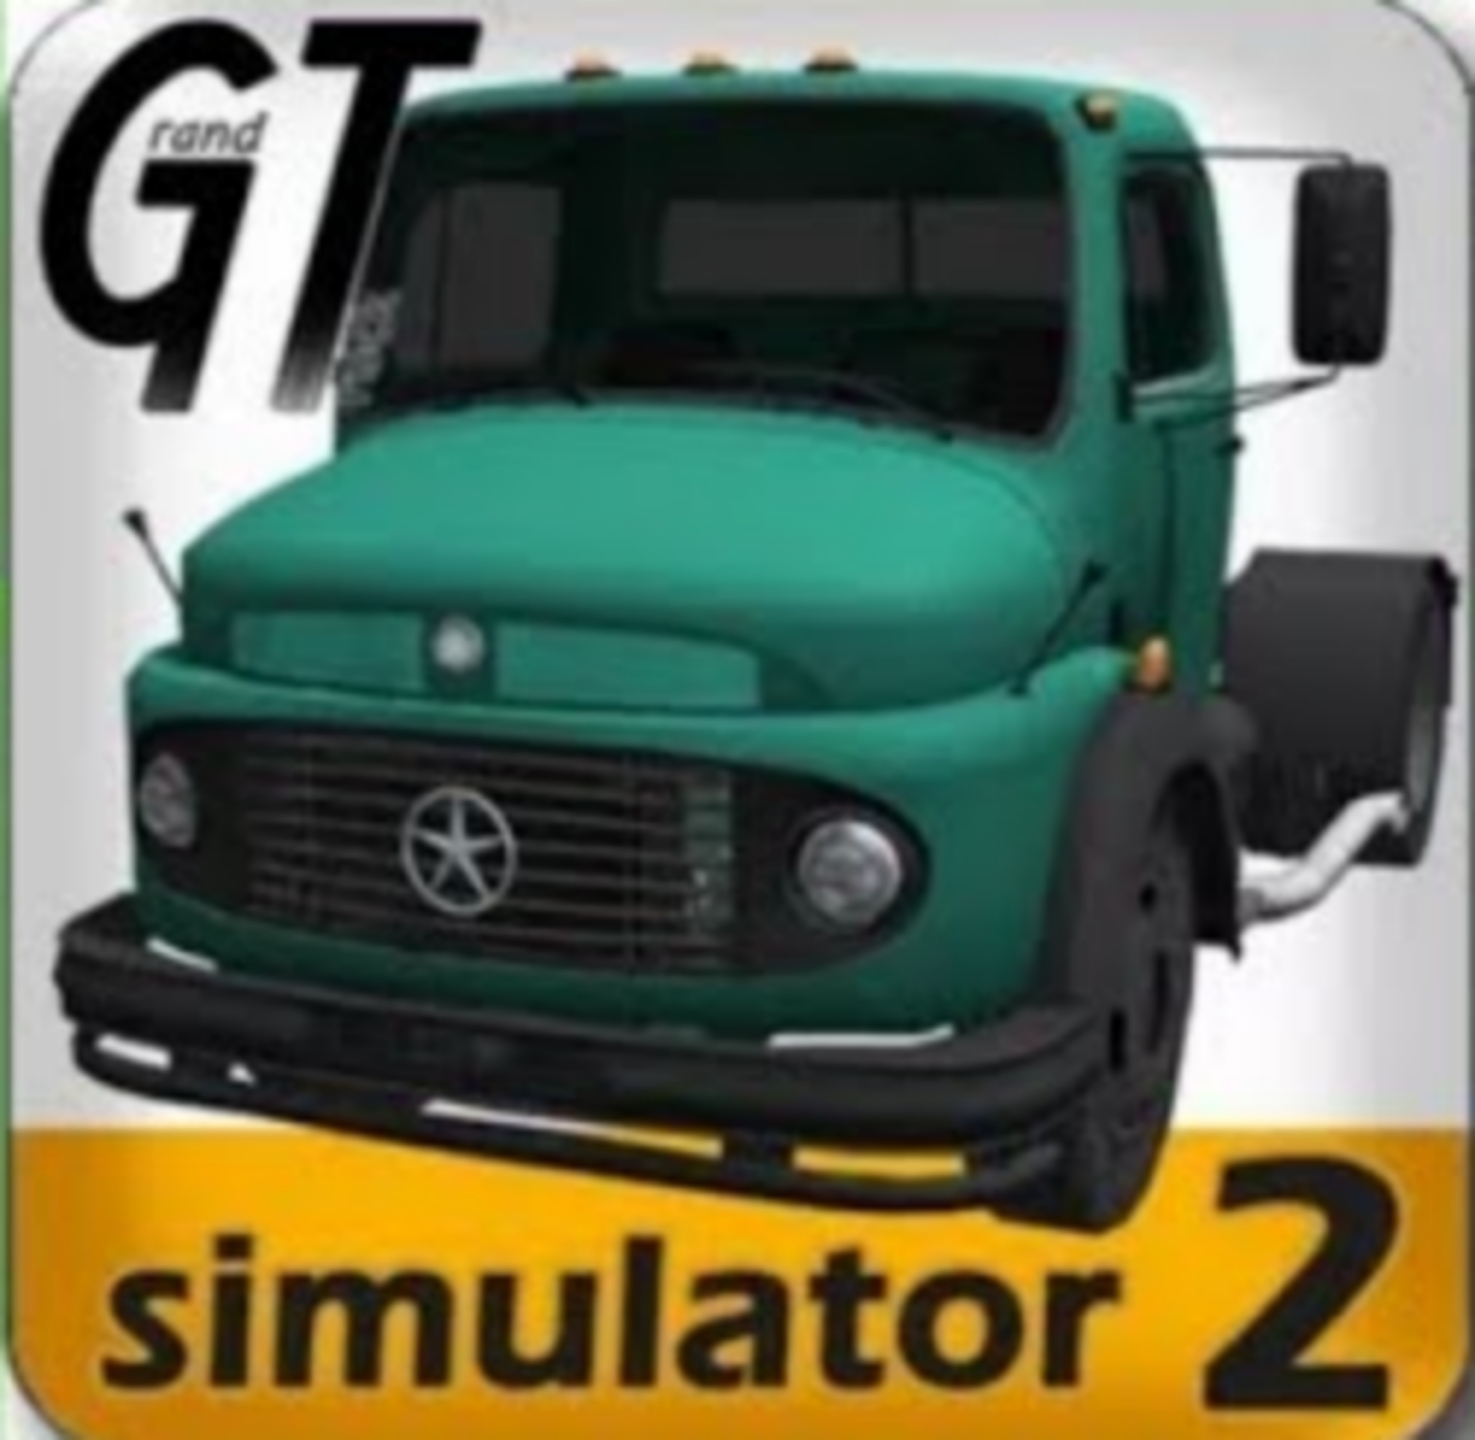 Grand Truck Simulator 2 

Обучаемся и берём первый заказ